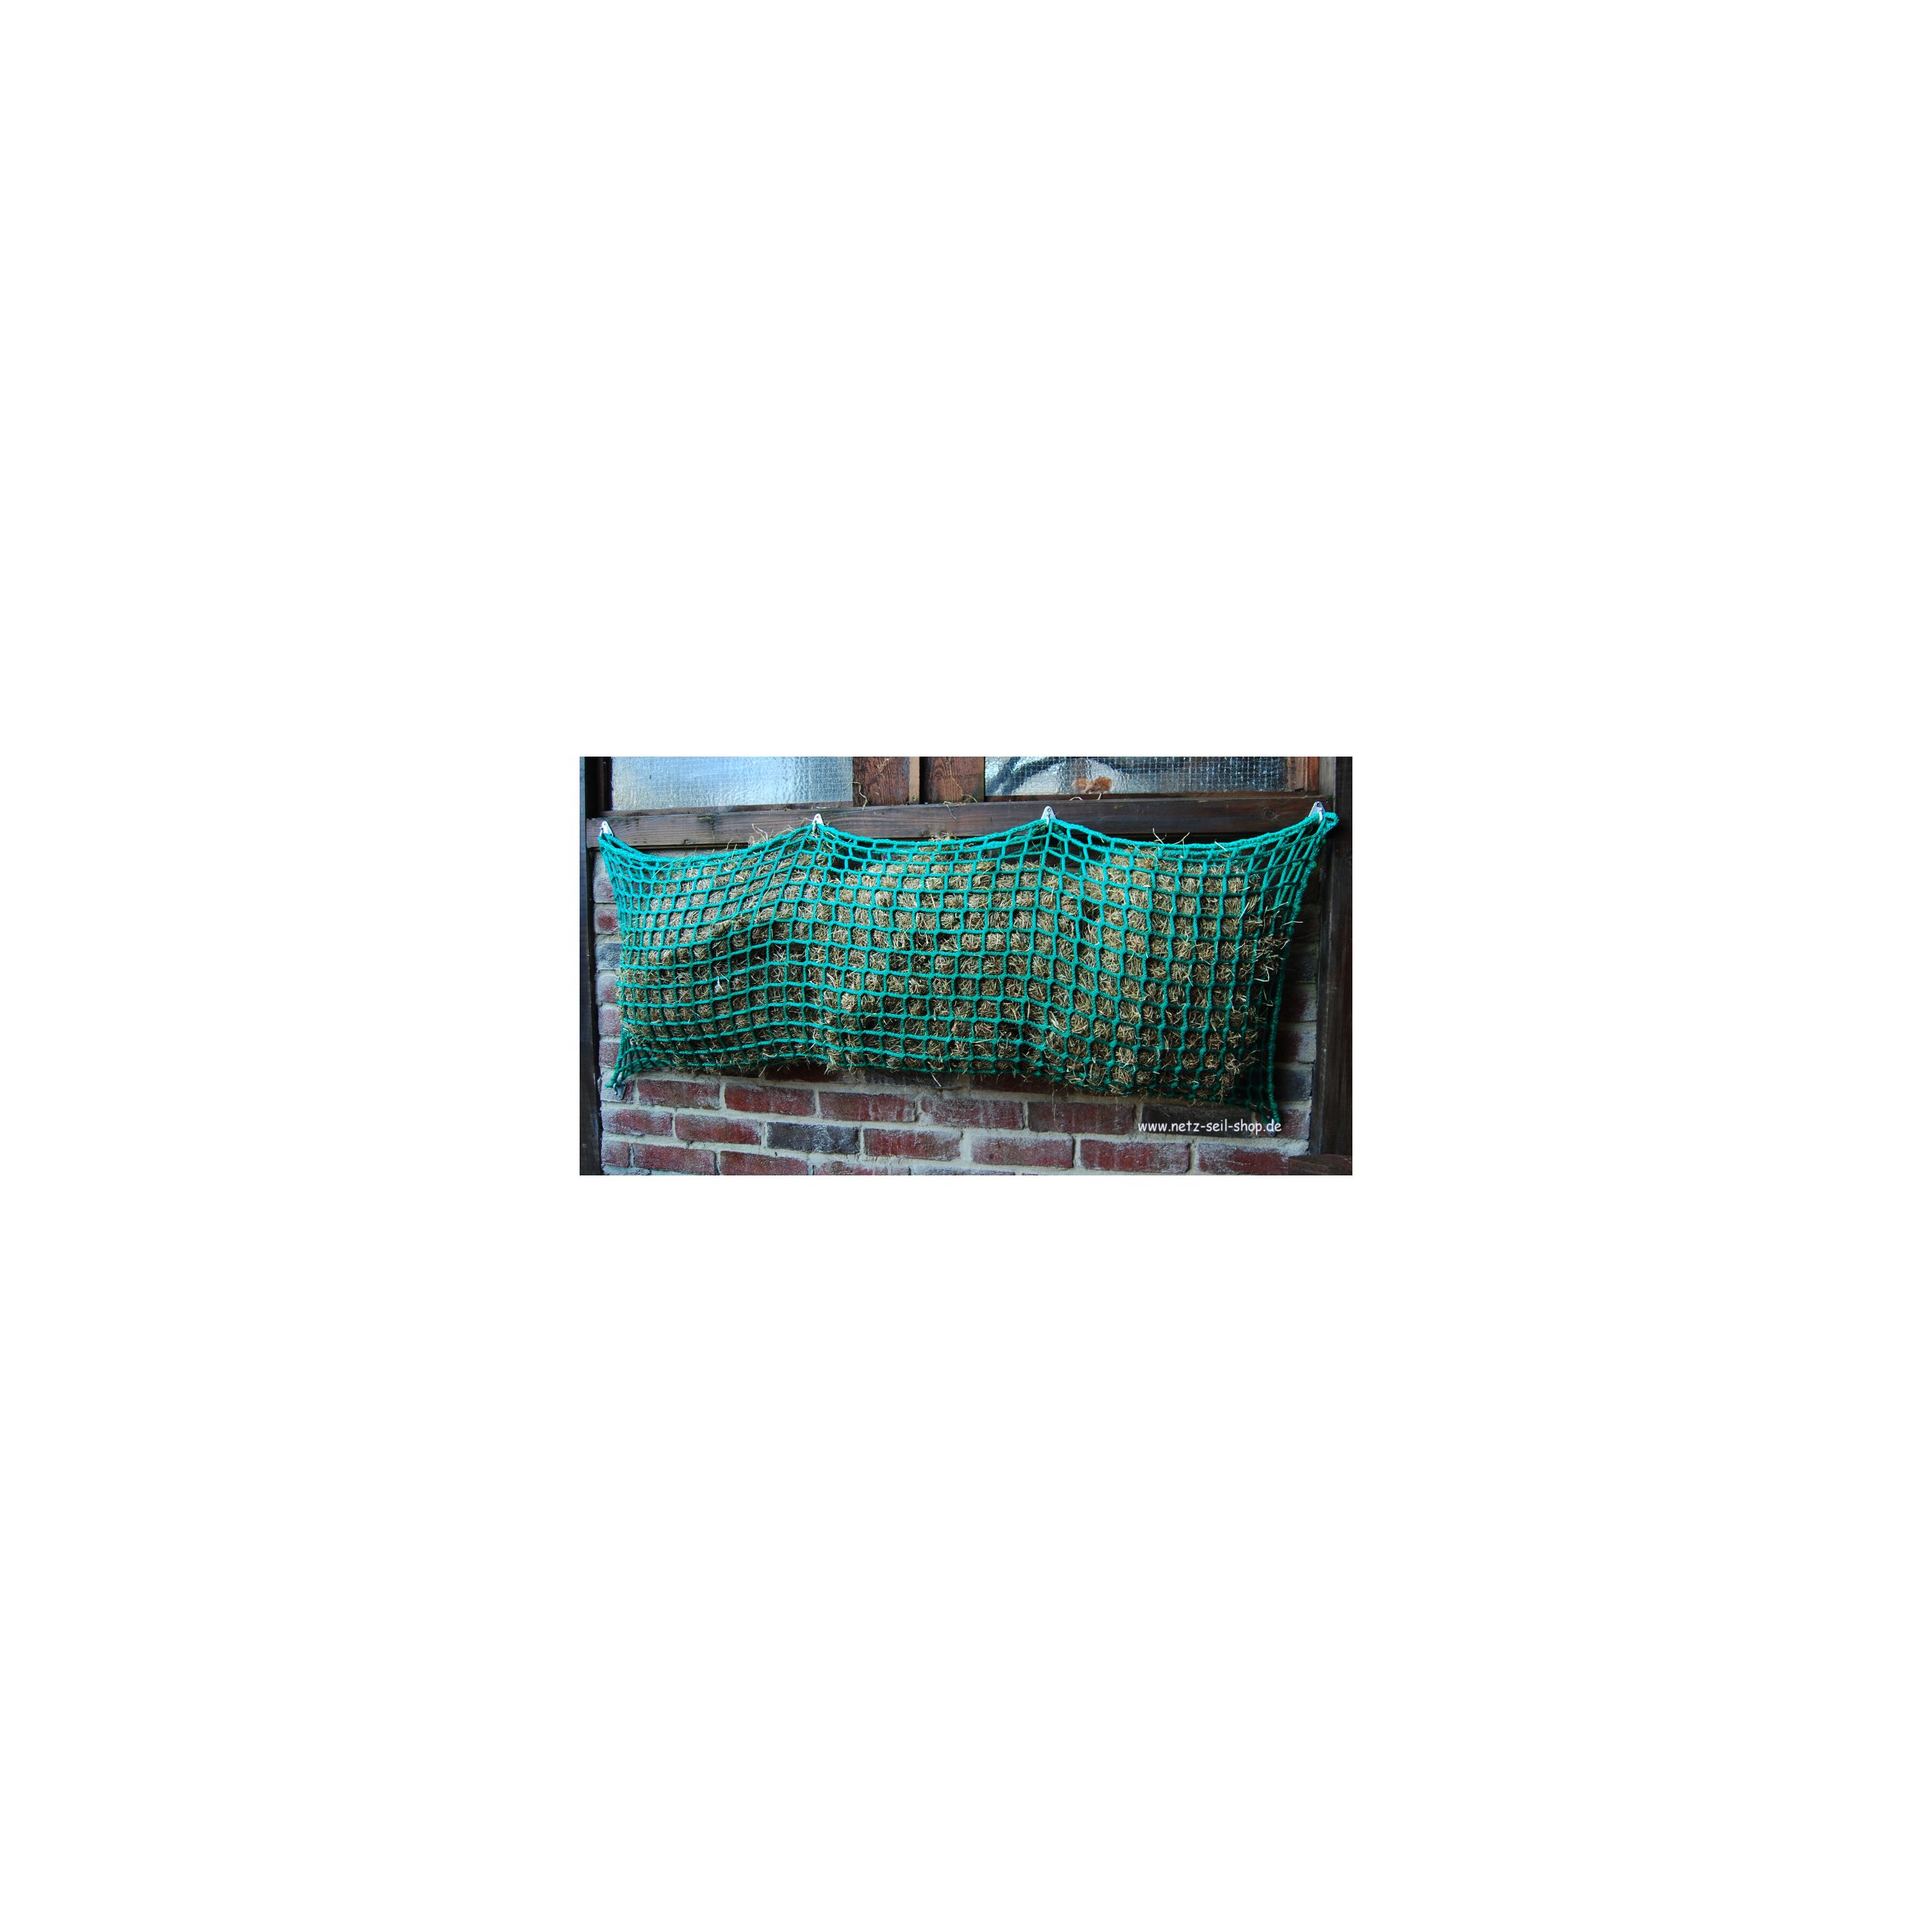 Hooi net in zakvorm, 1,20 m breed, hoogte 0,80 m Ø 5 mm garen dikte, # 60 mm maas